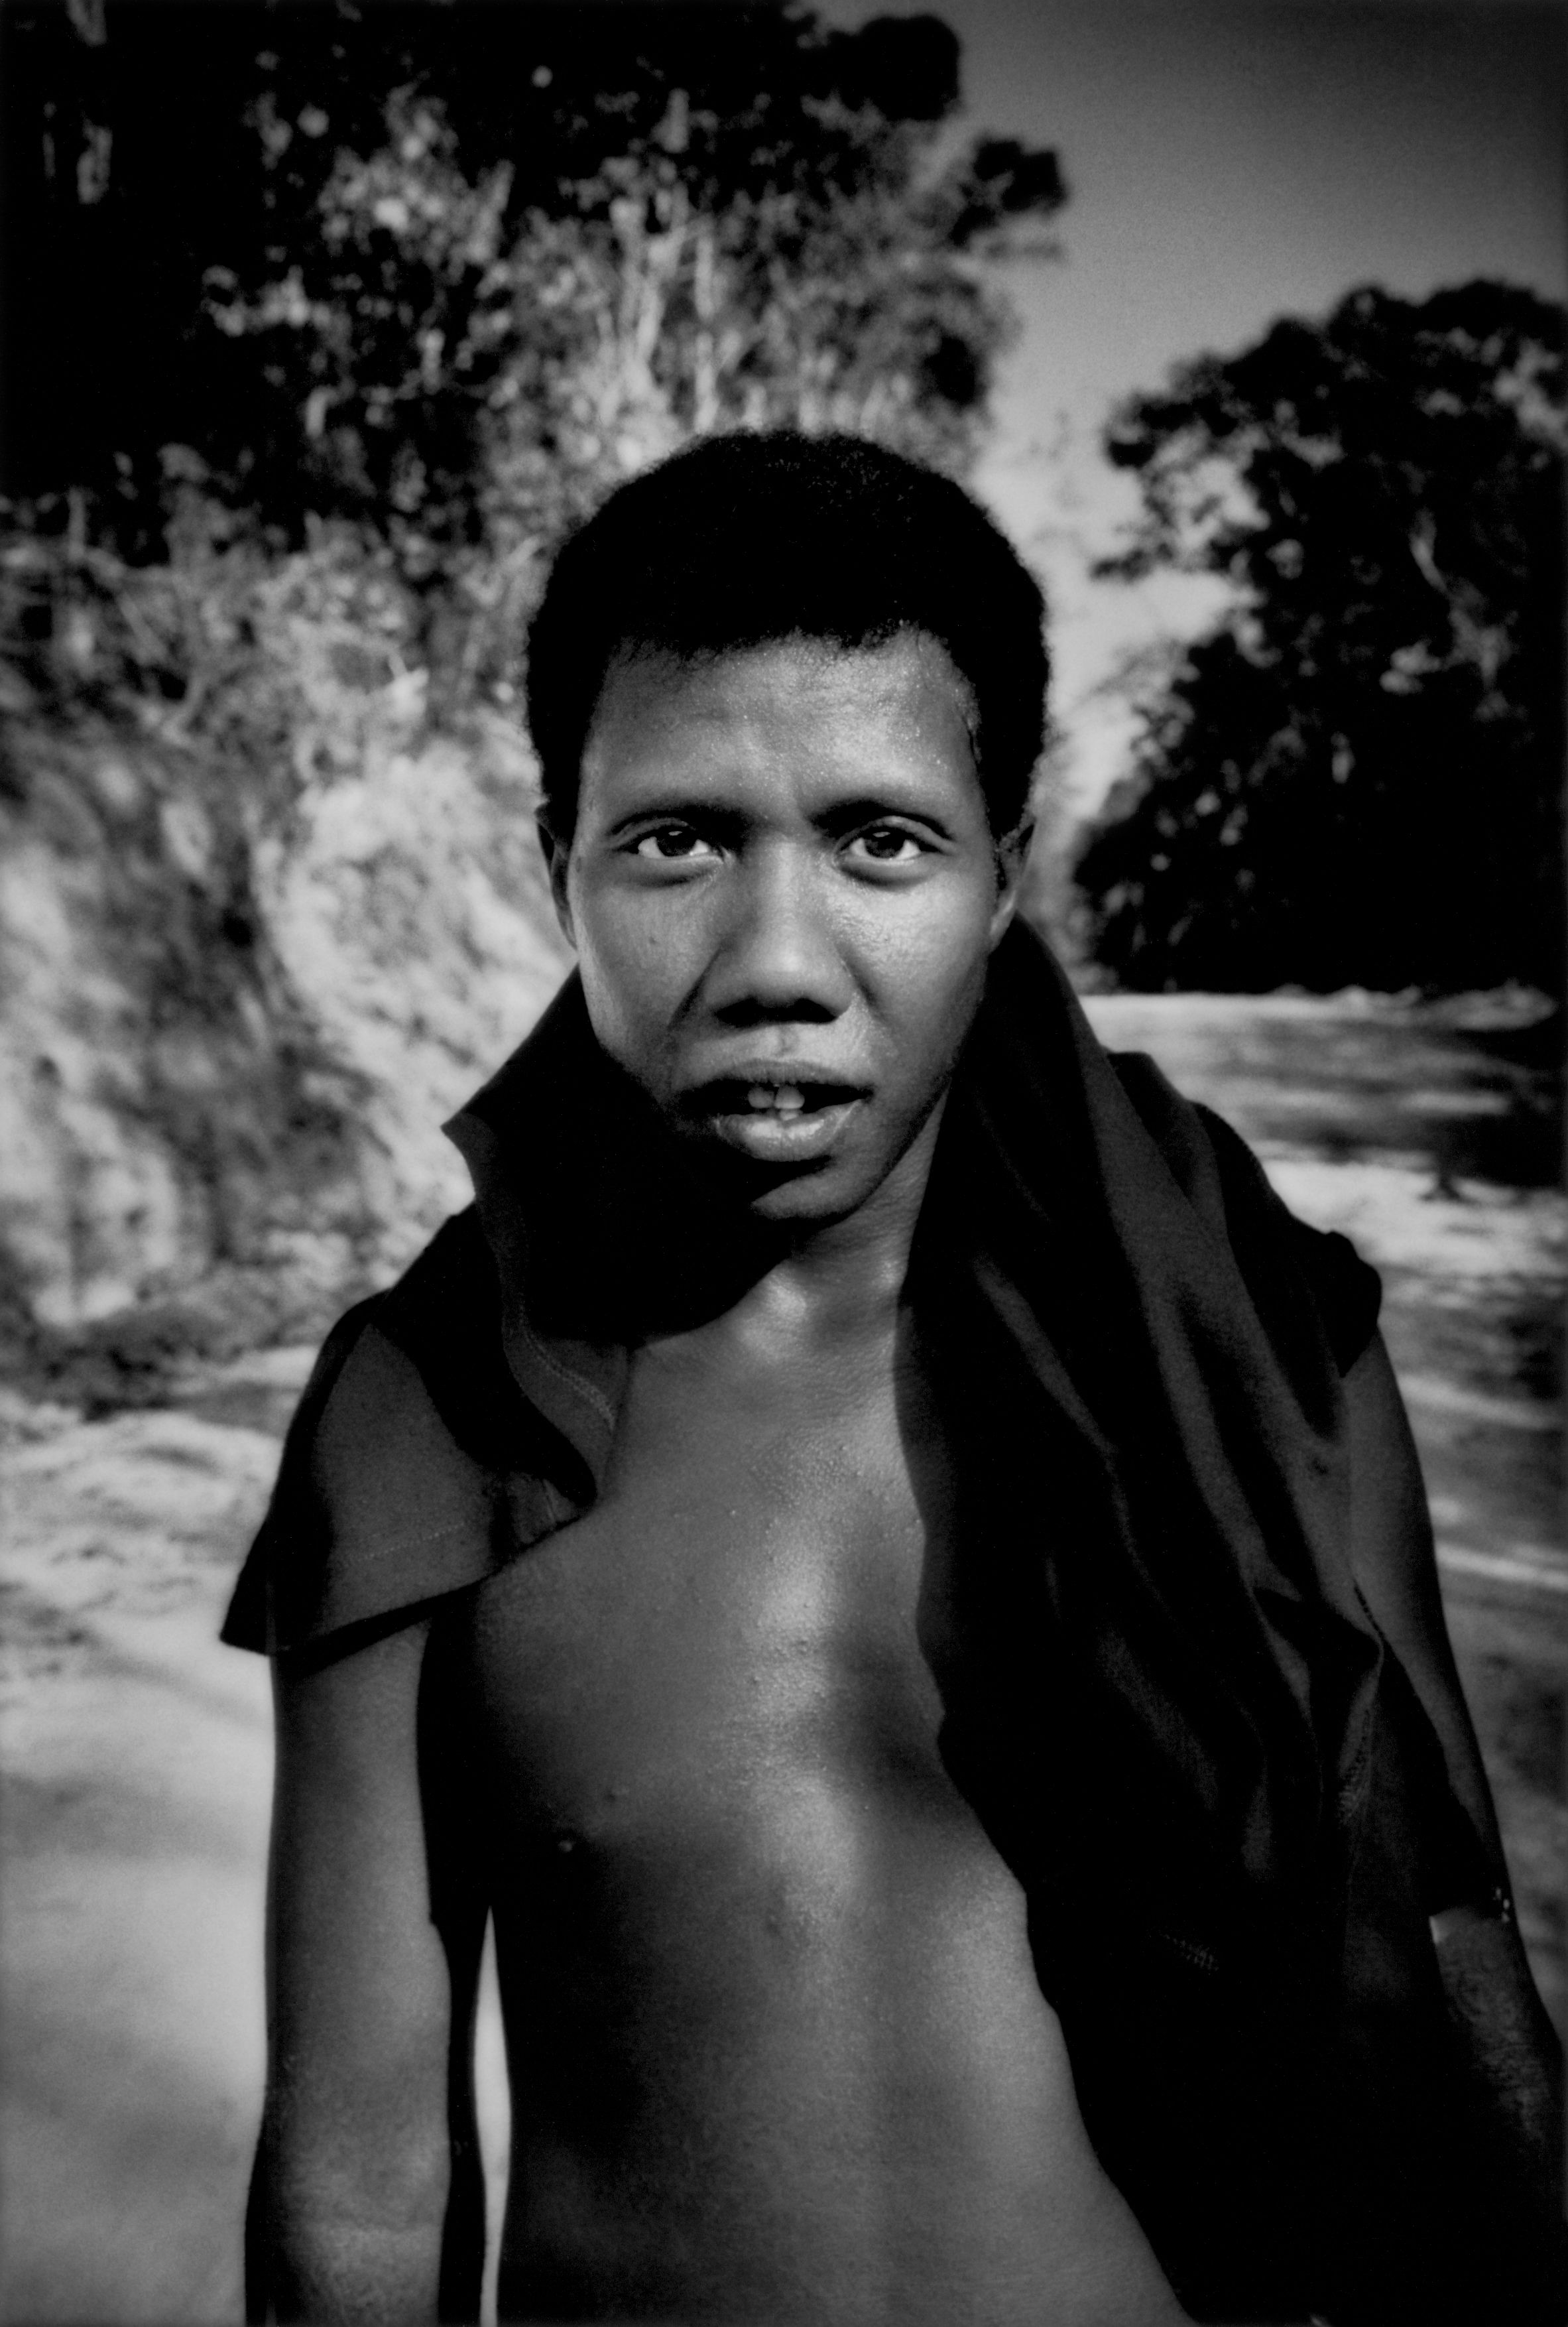 A Batek boy. Image by James Whitlow Delano. Malaysia, 2011.